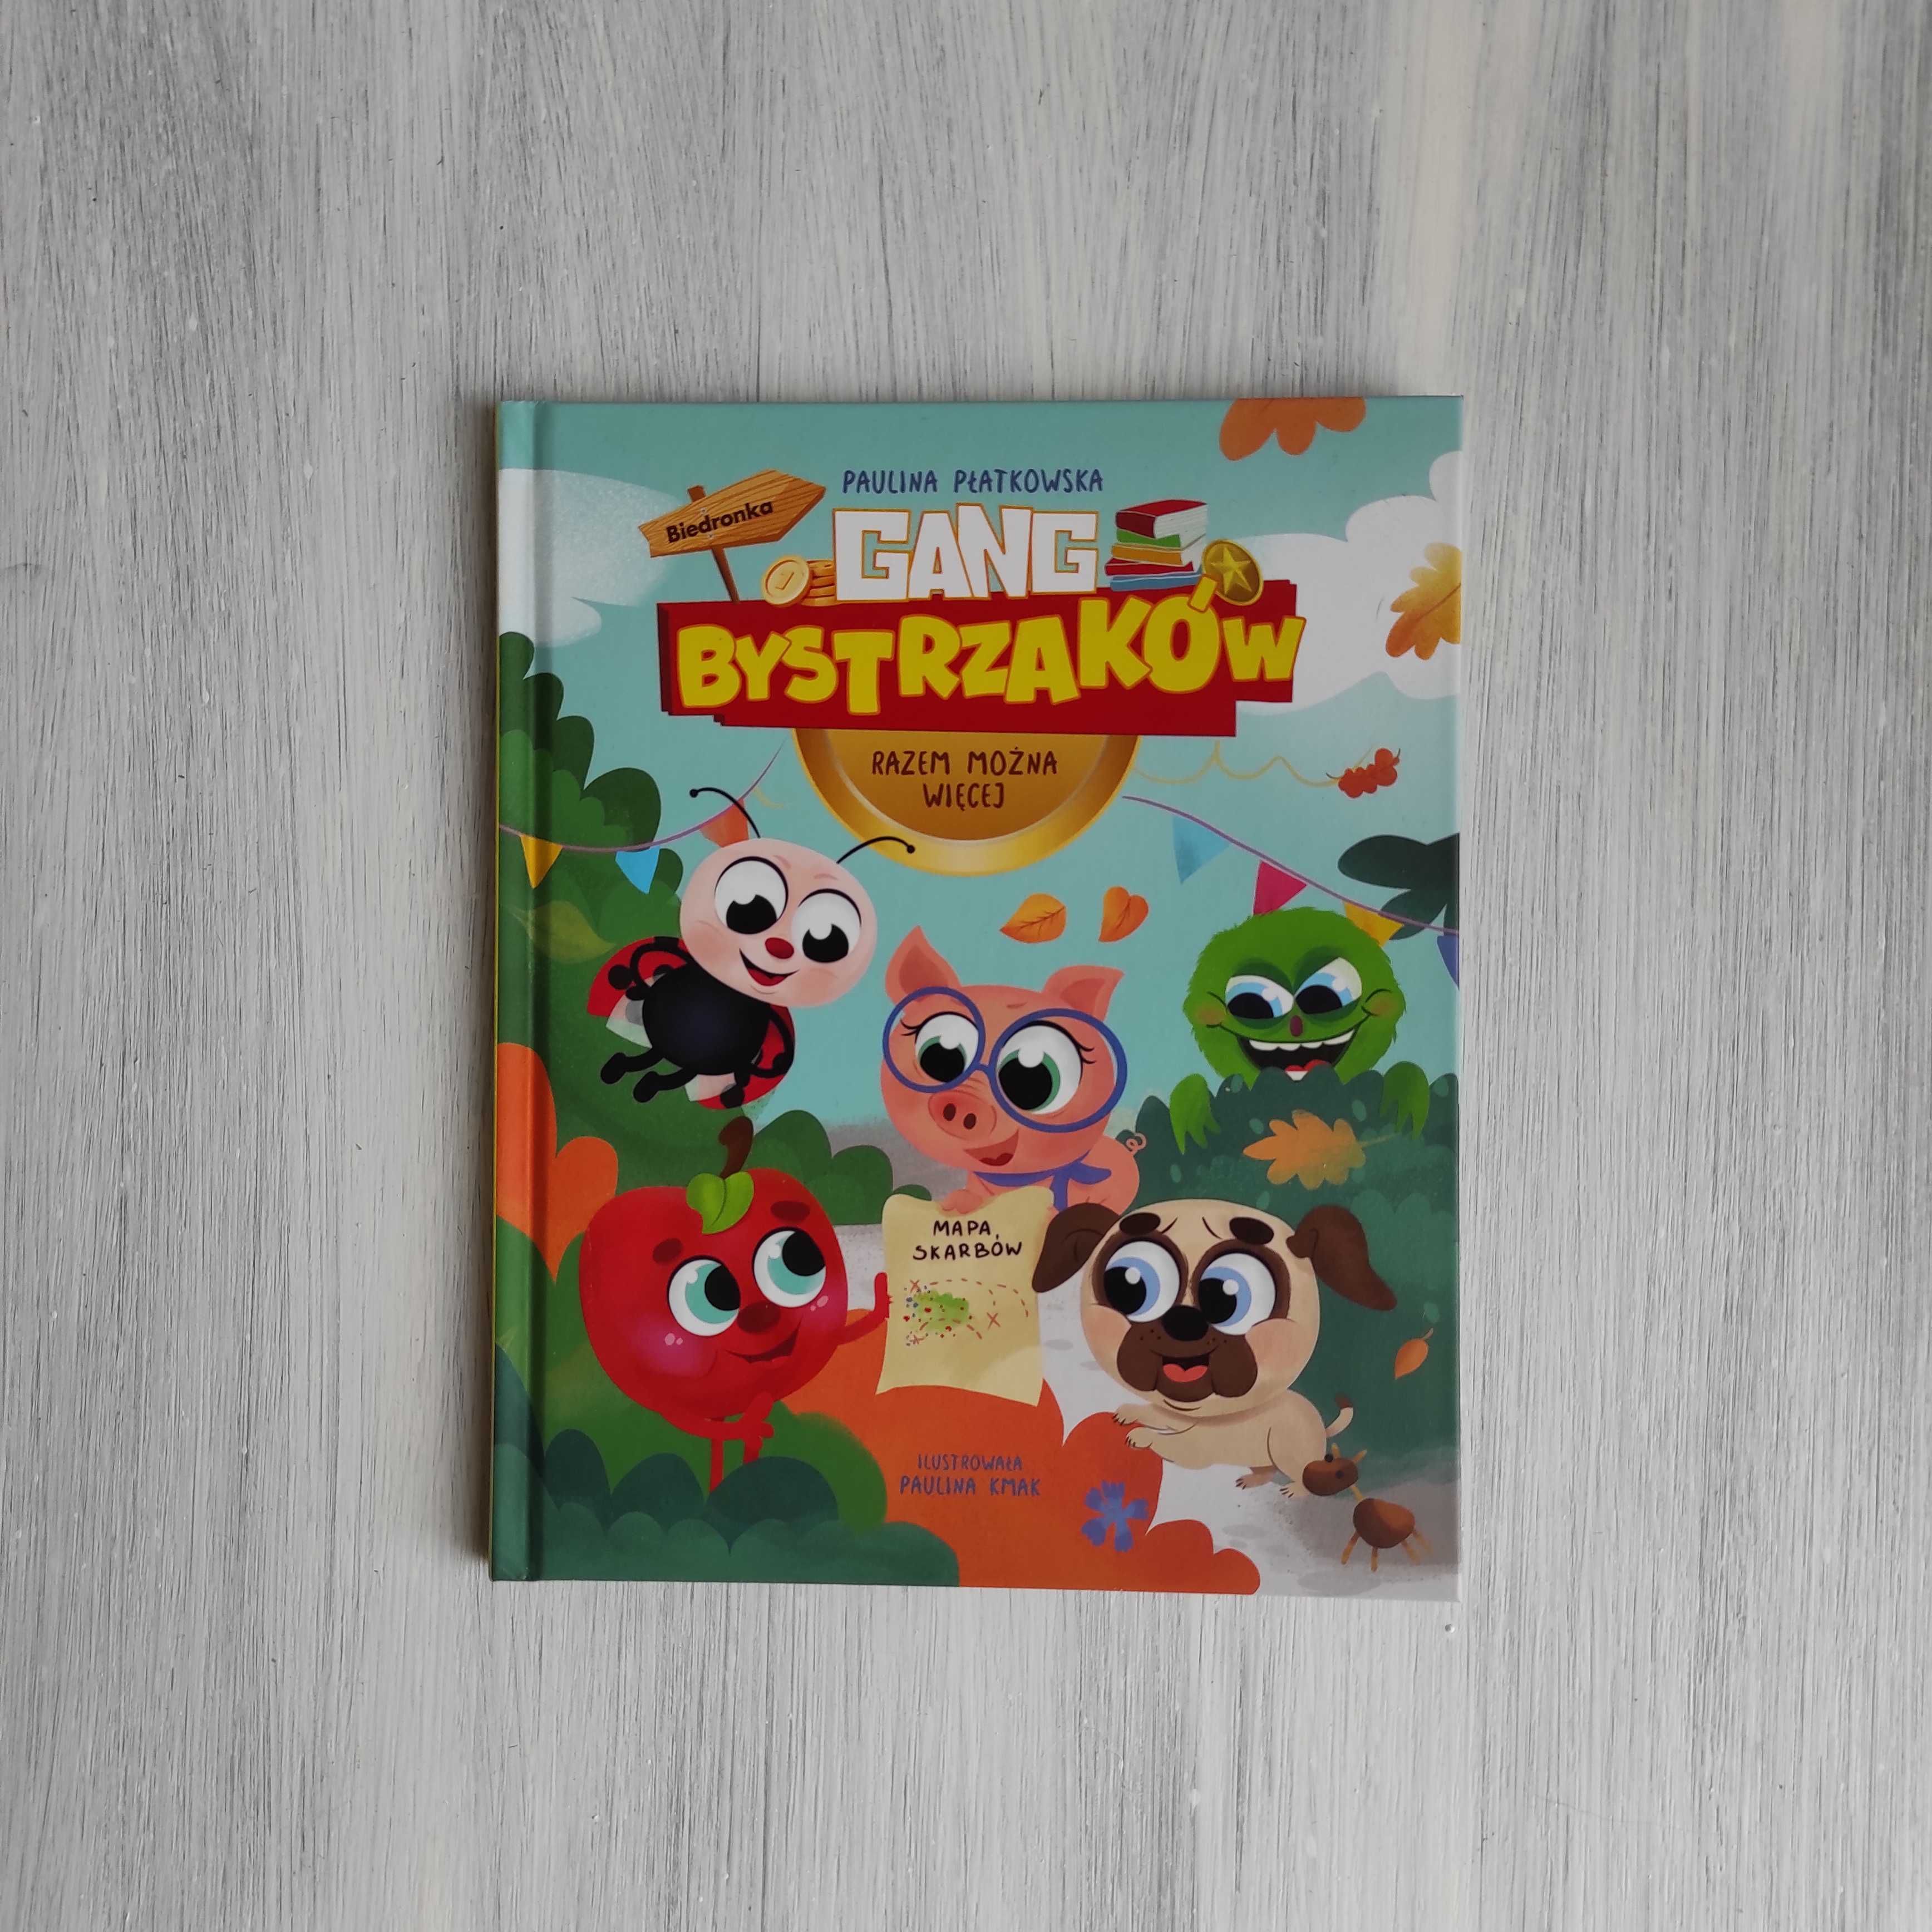 Gang Bystrzaków - Książka z Biedronki